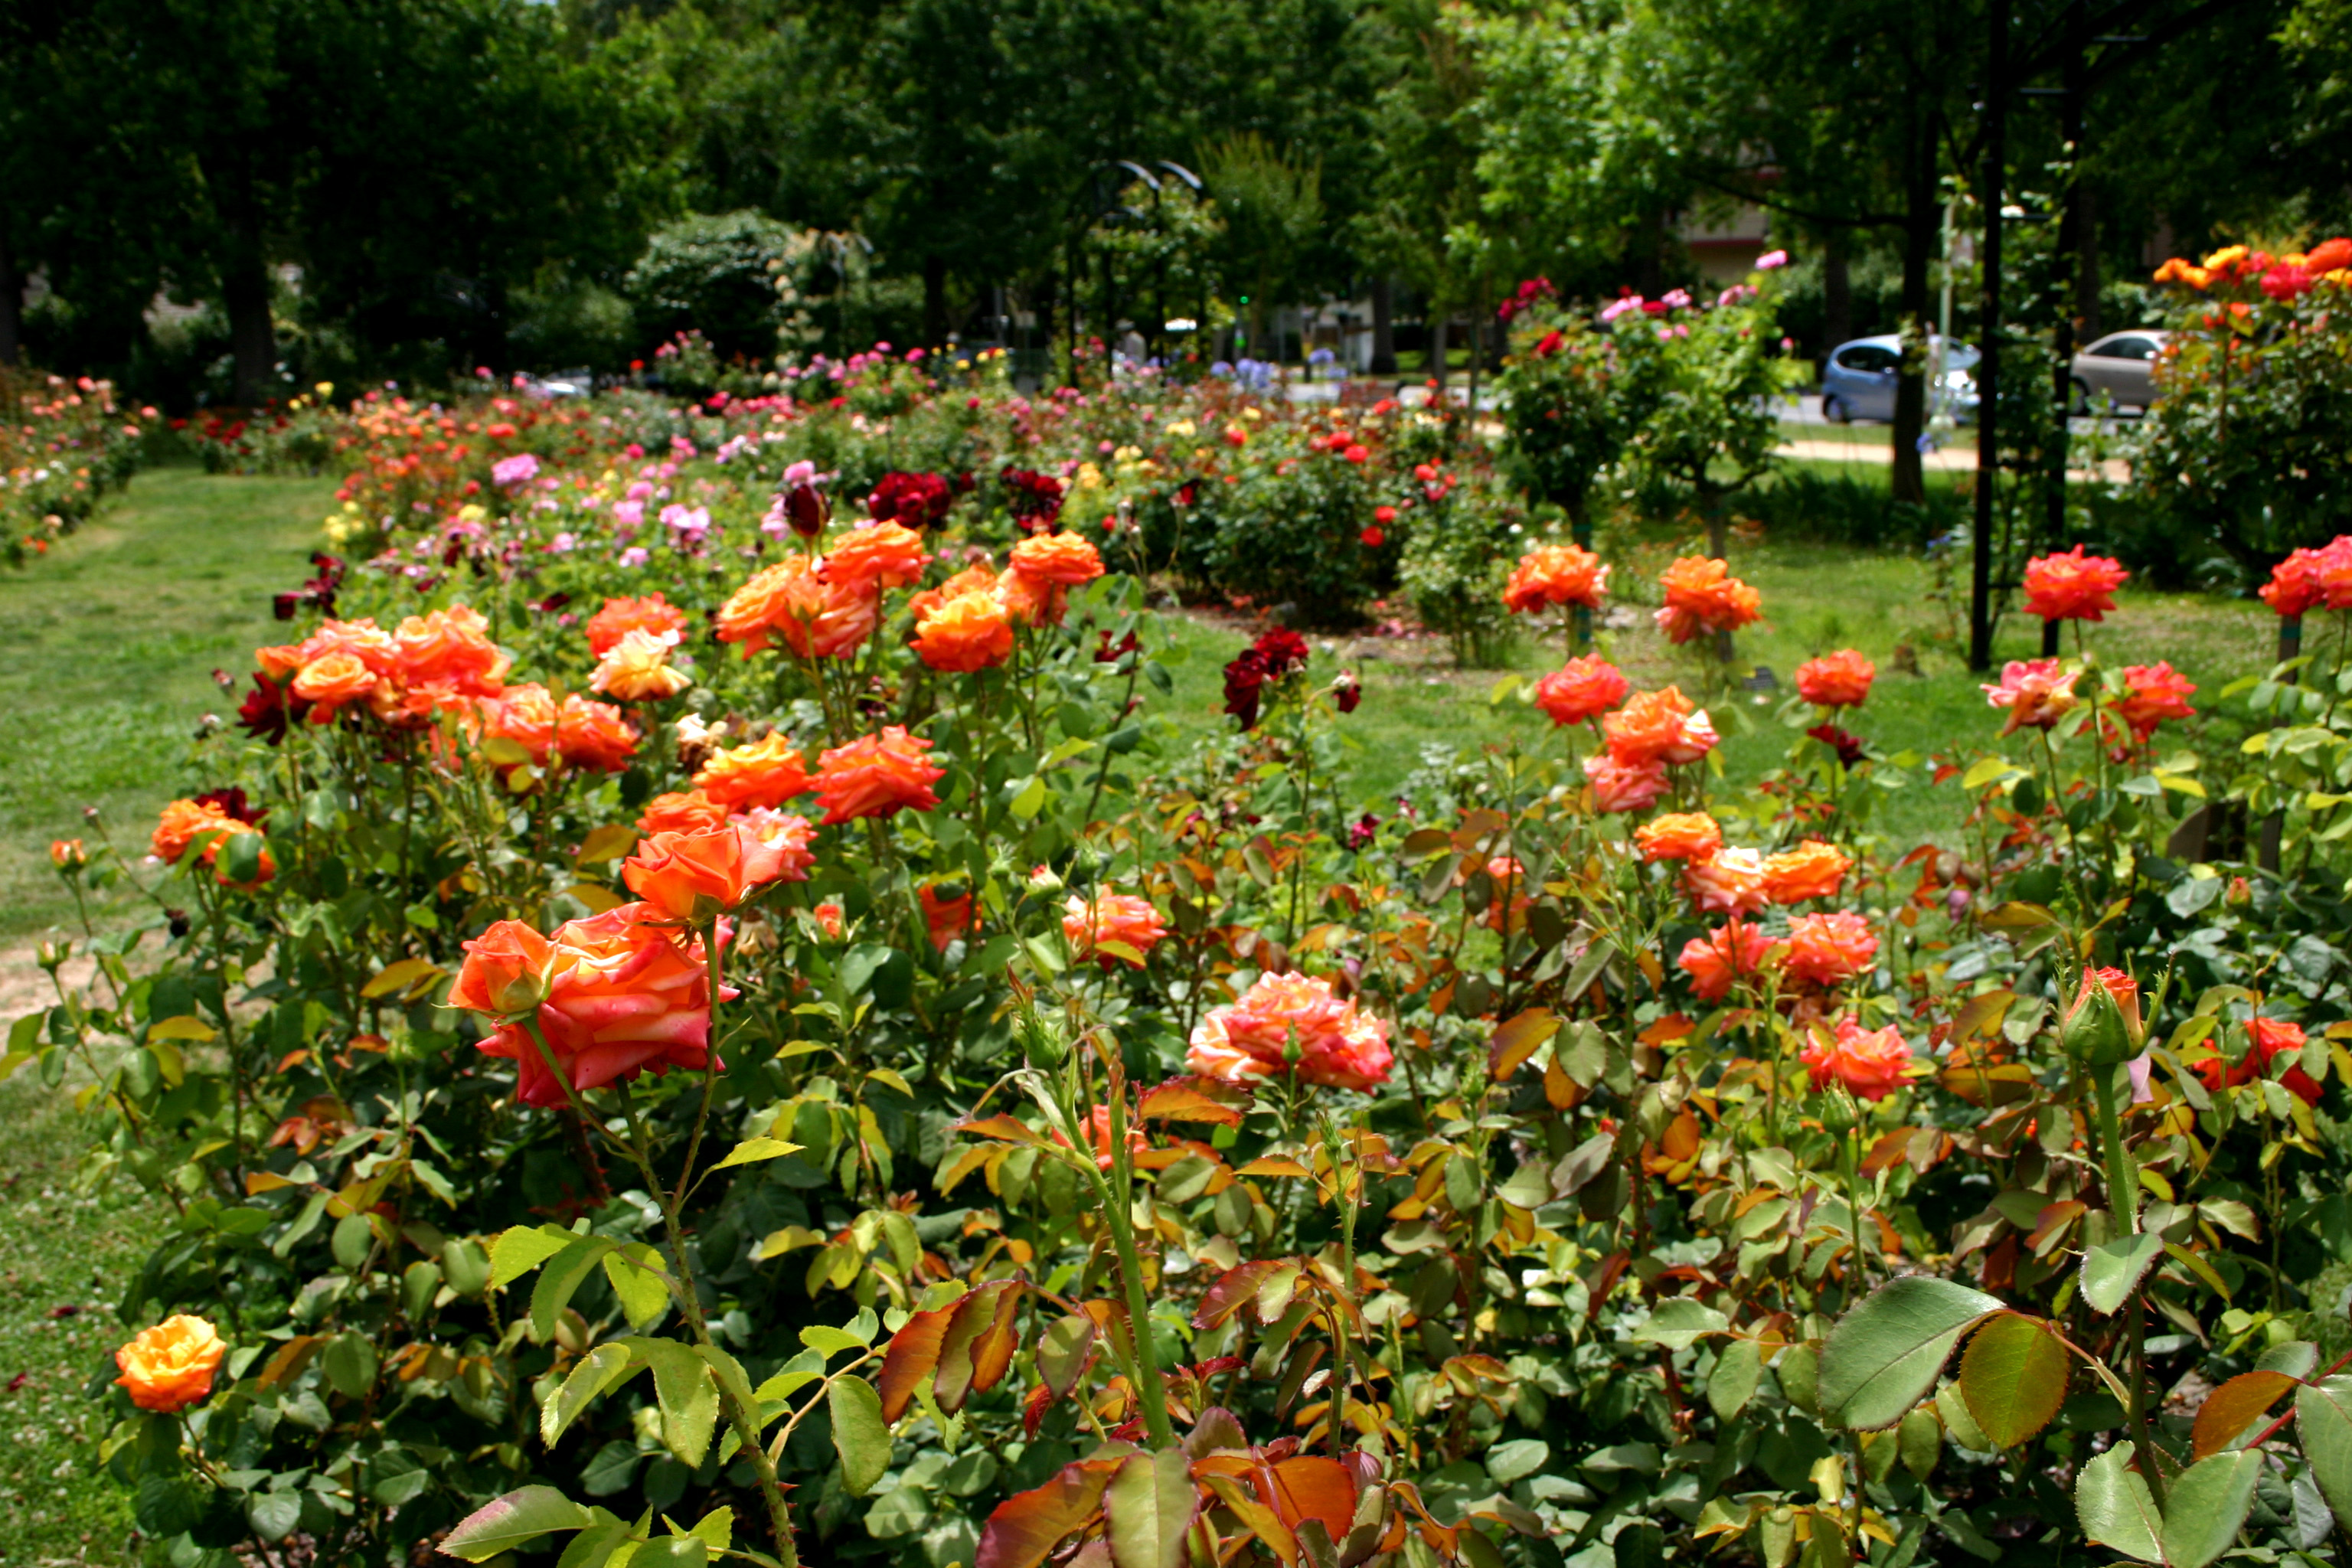 Mckinley Park Rose Garden A Cherished Community Landmark Valley